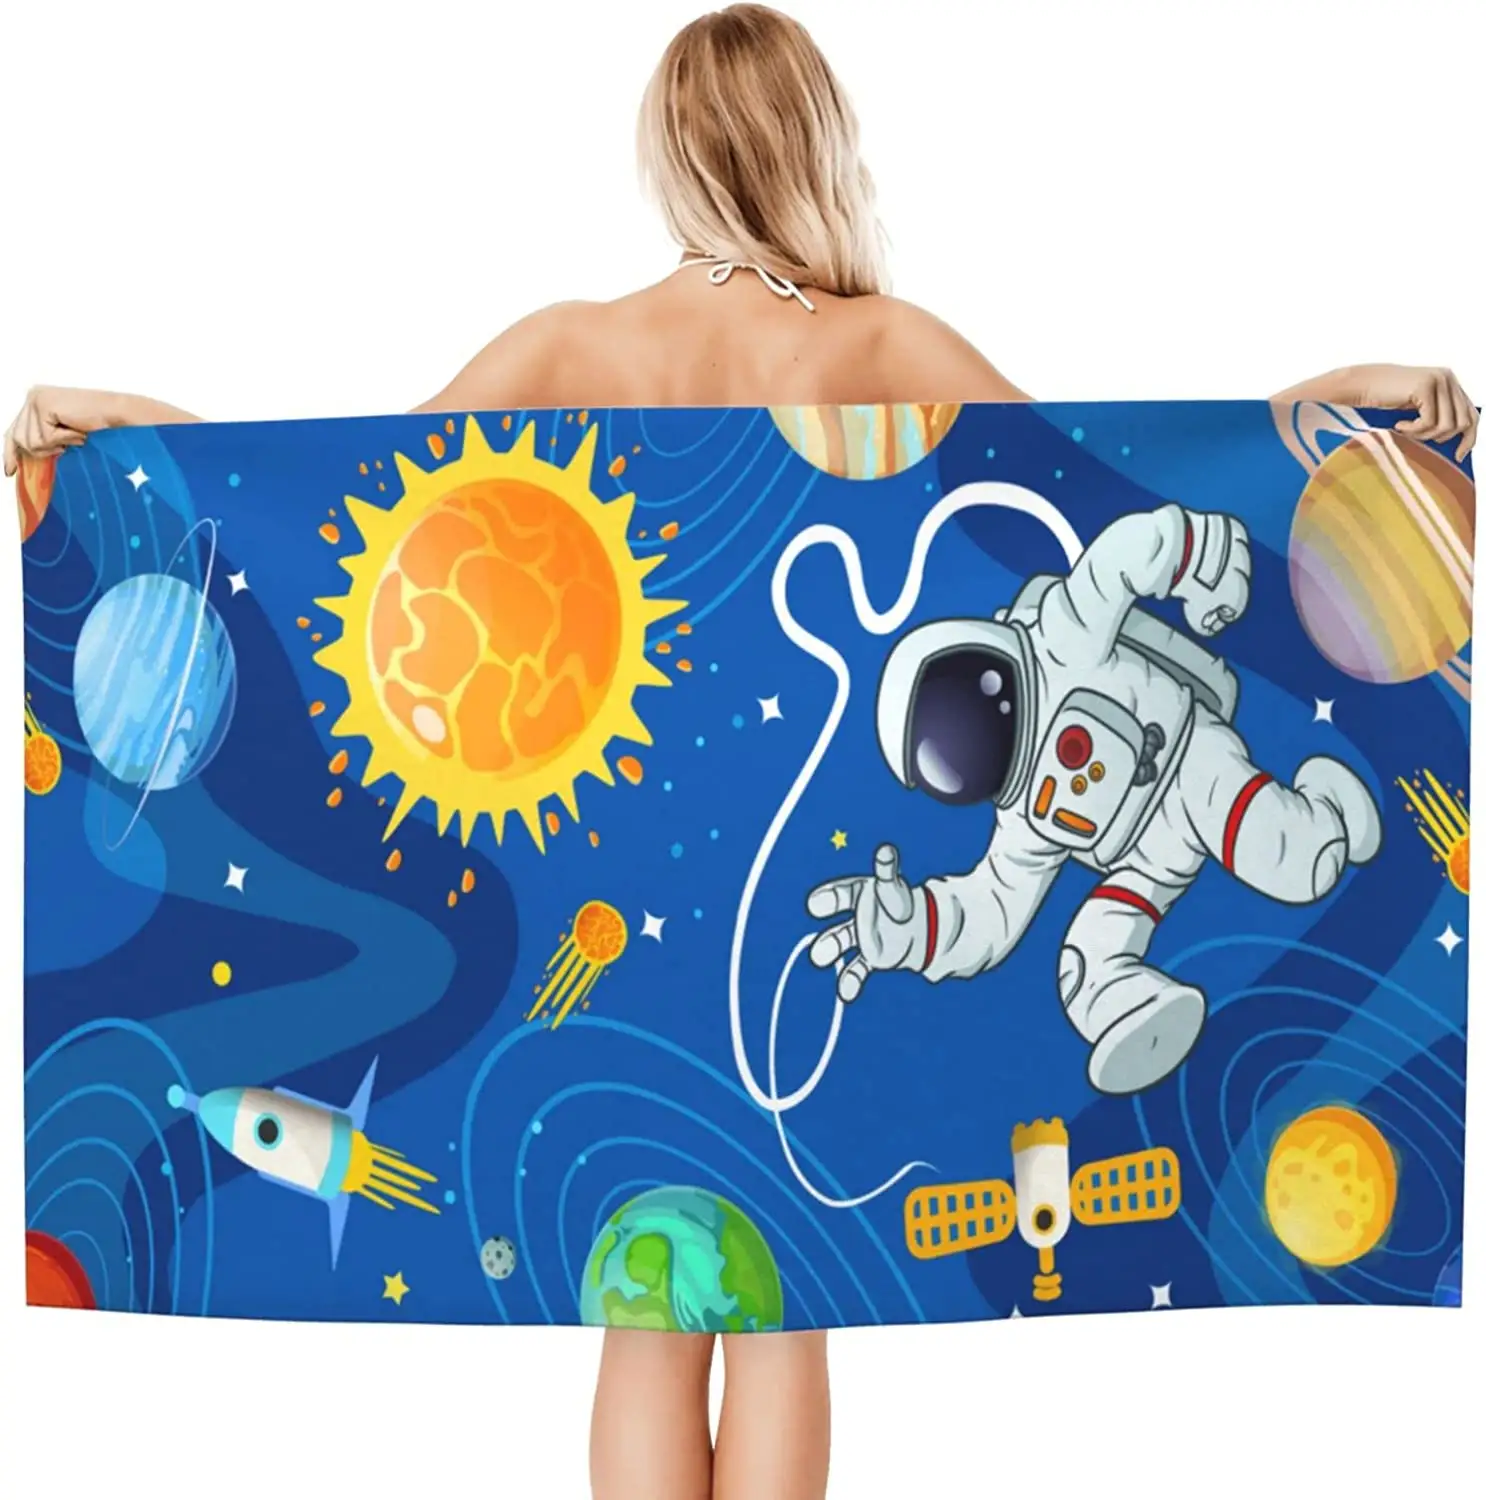 Пляжное полотенце из микрофибры для мужчин и женщин, банное полотенце с рисунком астронавта, планеты, галактики, звездного неба, Луны, солнца, ракеты